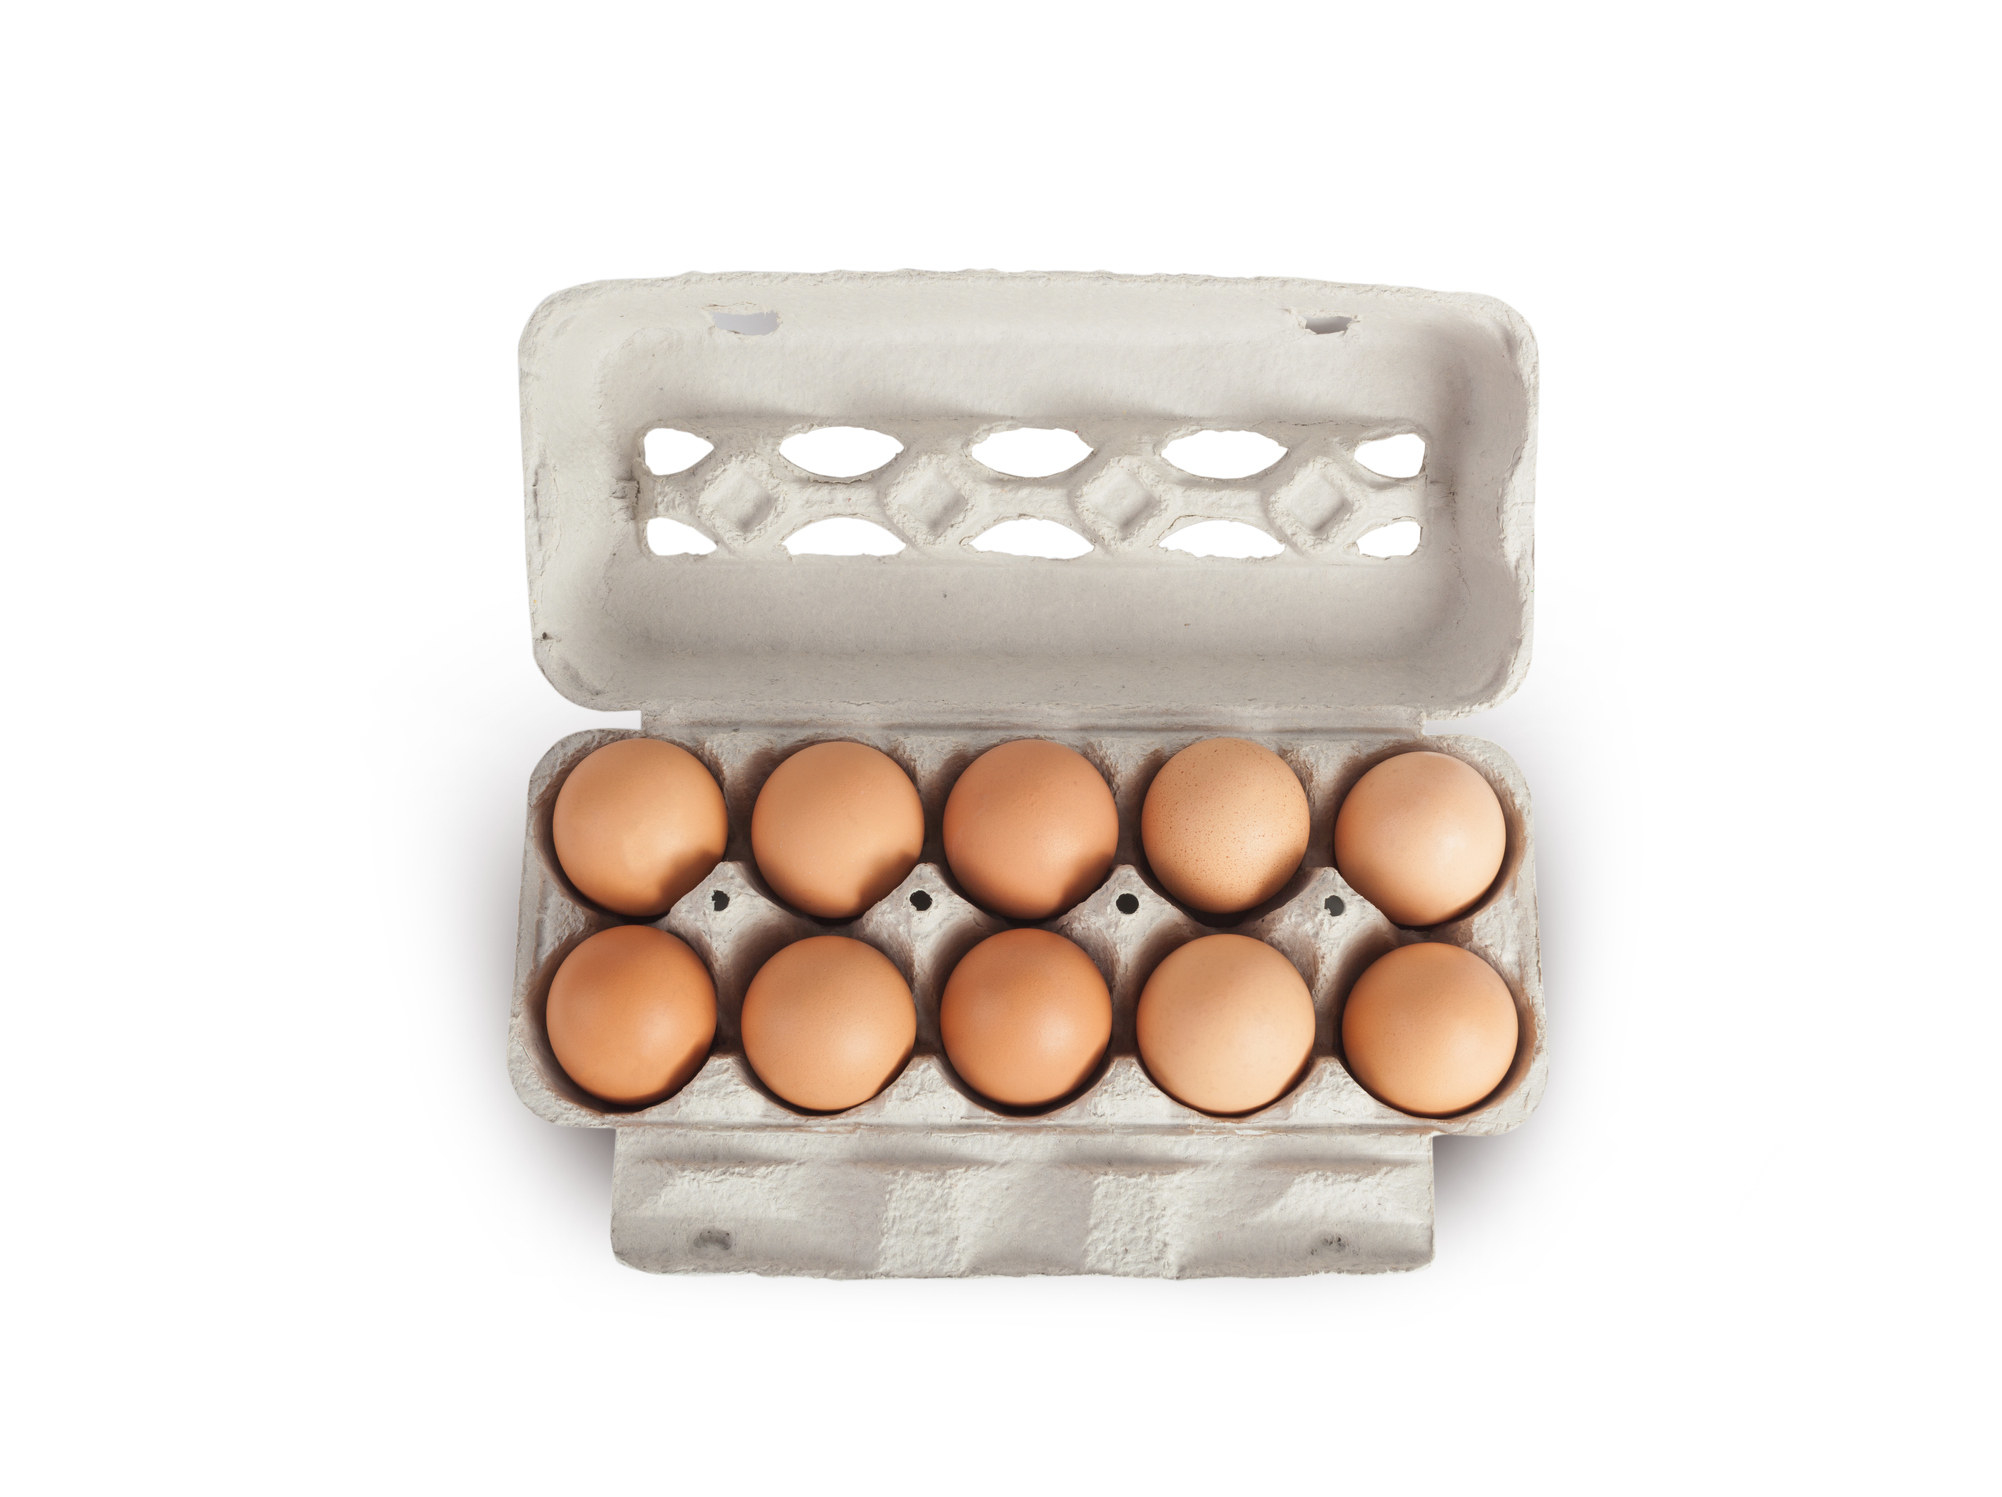 An open carton of brown eggs